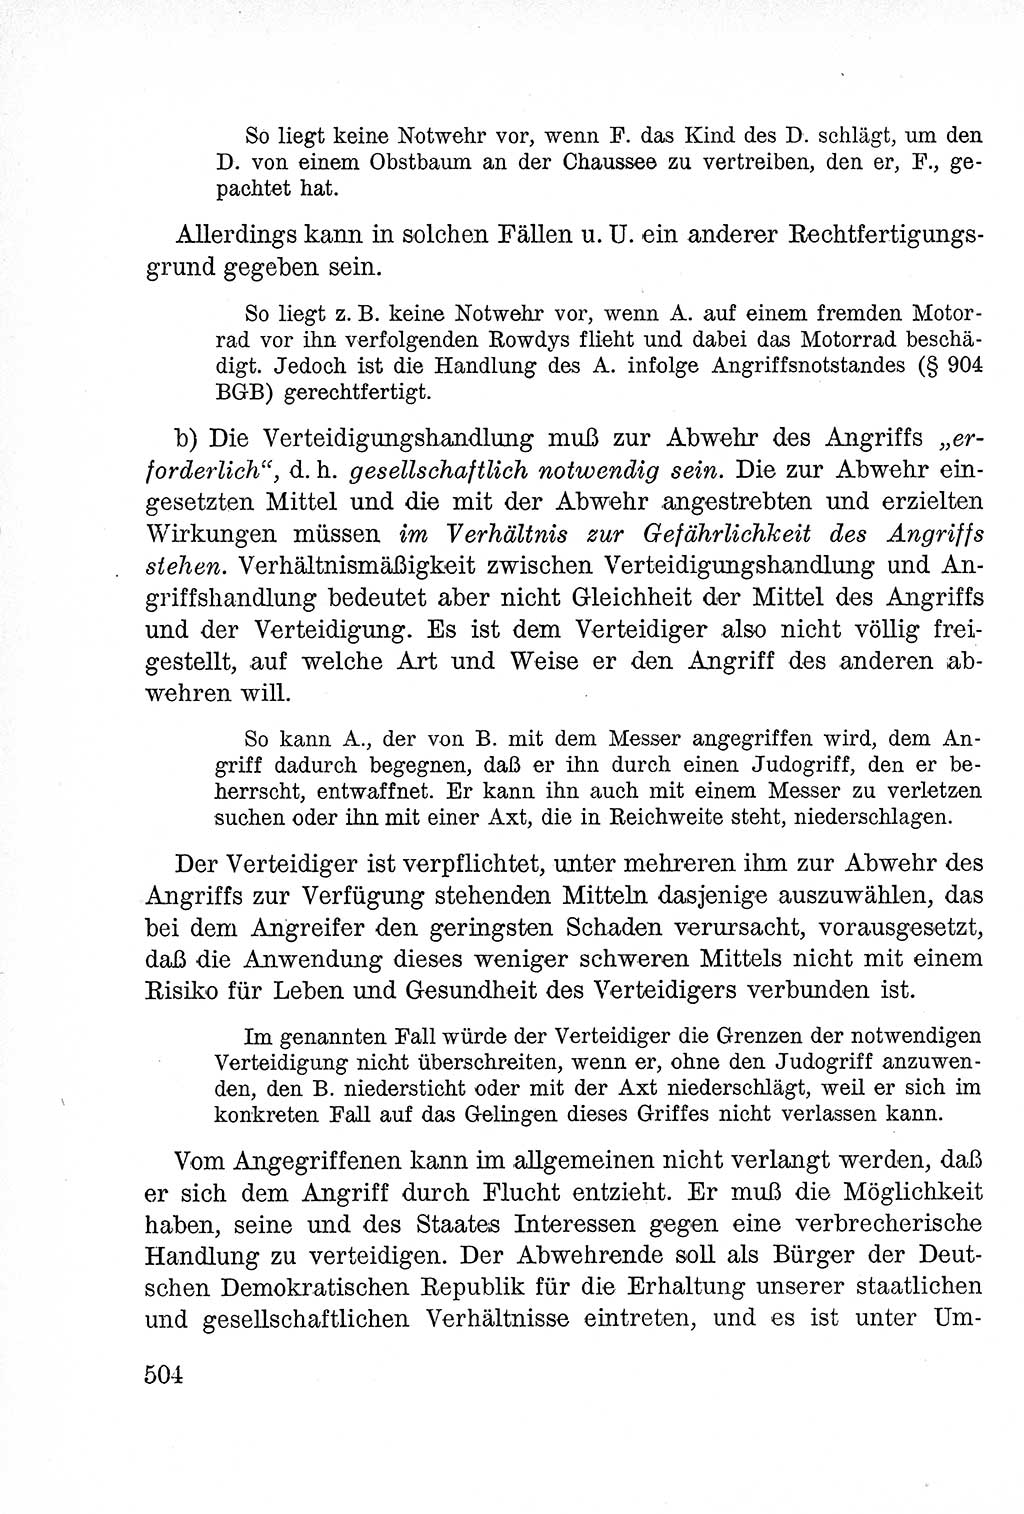 Lehrbuch des Strafrechts der Deutschen Demokratischen Republik (DDR), Allgemeiner Teil 1957, Seite 504 (Lb. Strafr. DDR AT 1957, S. 504)